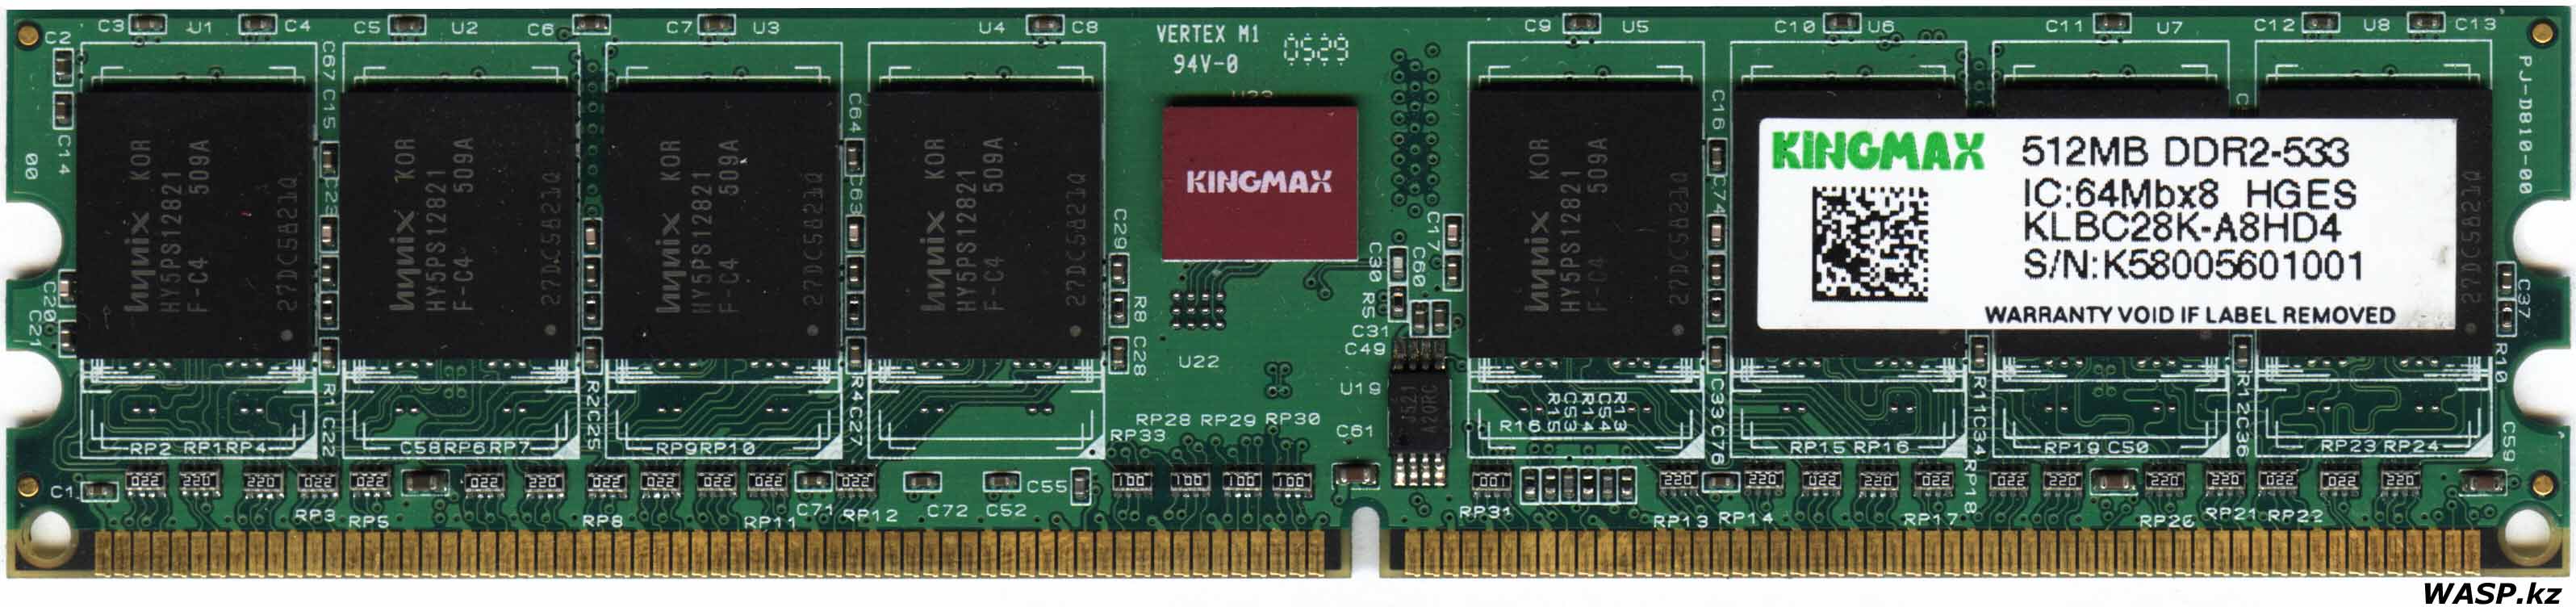 Kingmax KLBC28K-A8HD4 512 Мб память DDR2-533 обзор